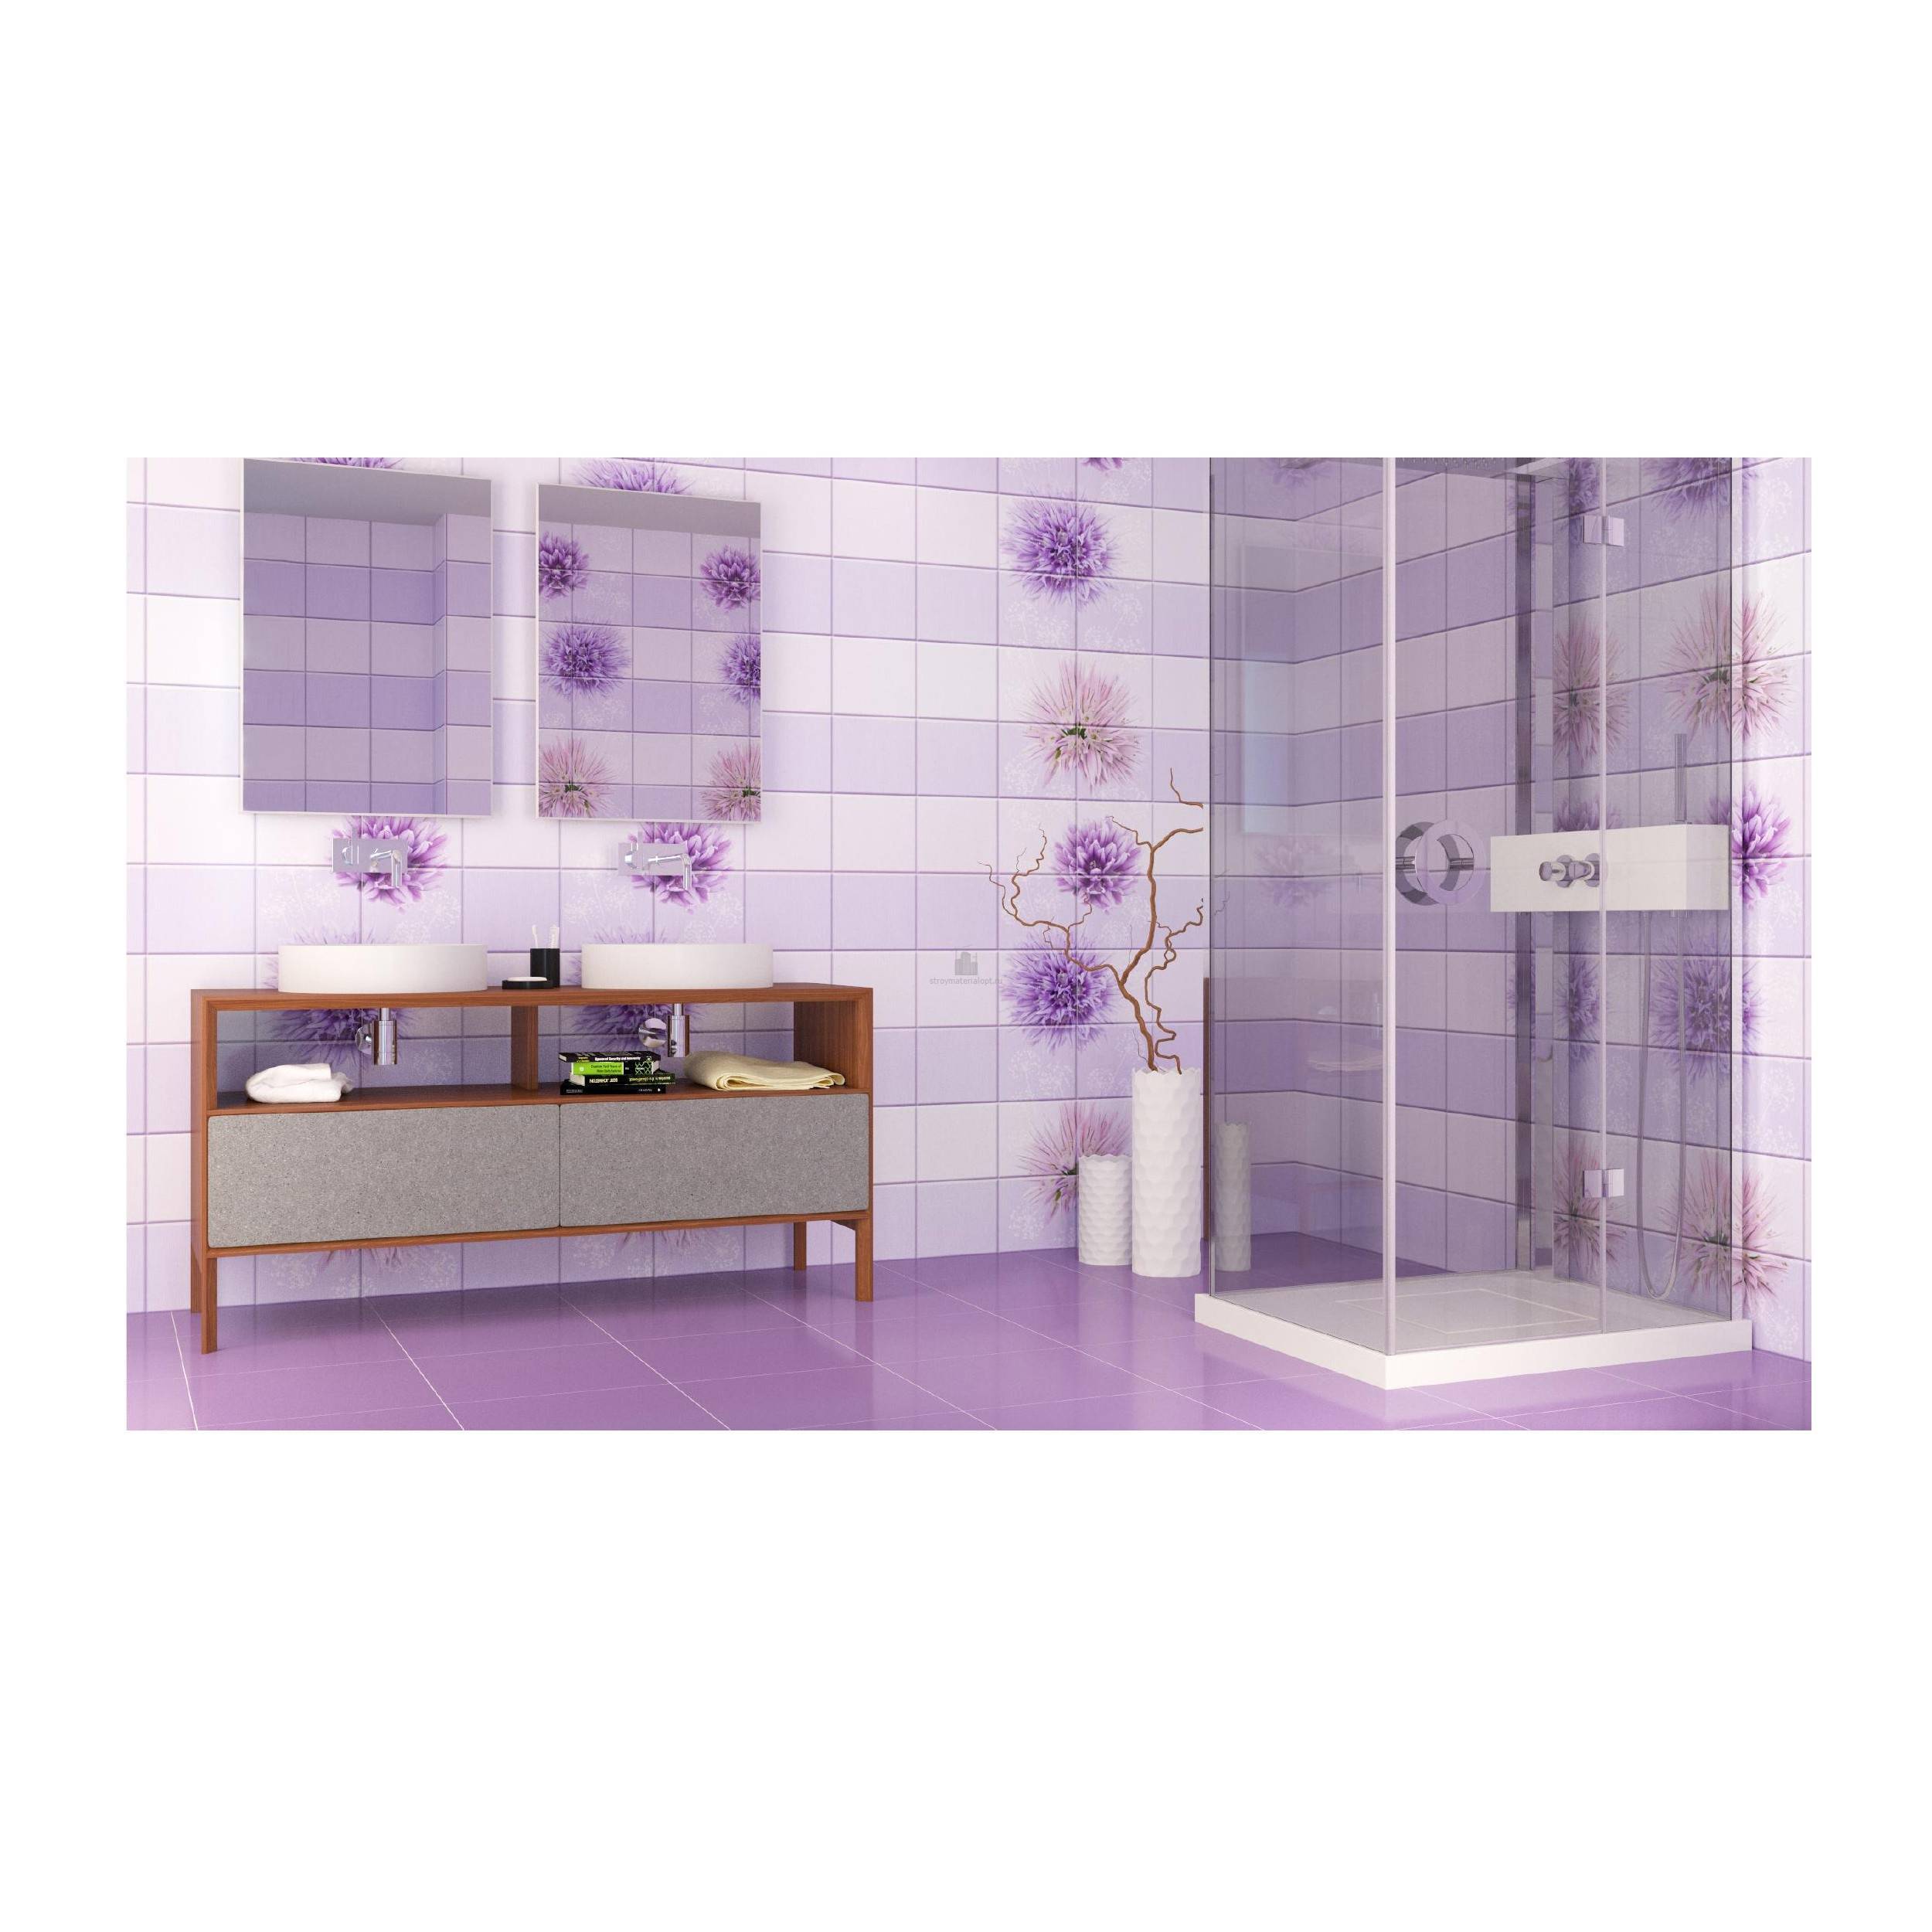 Ванная комната панелями: Ванная комната из пластиковых панелей: дизайн .